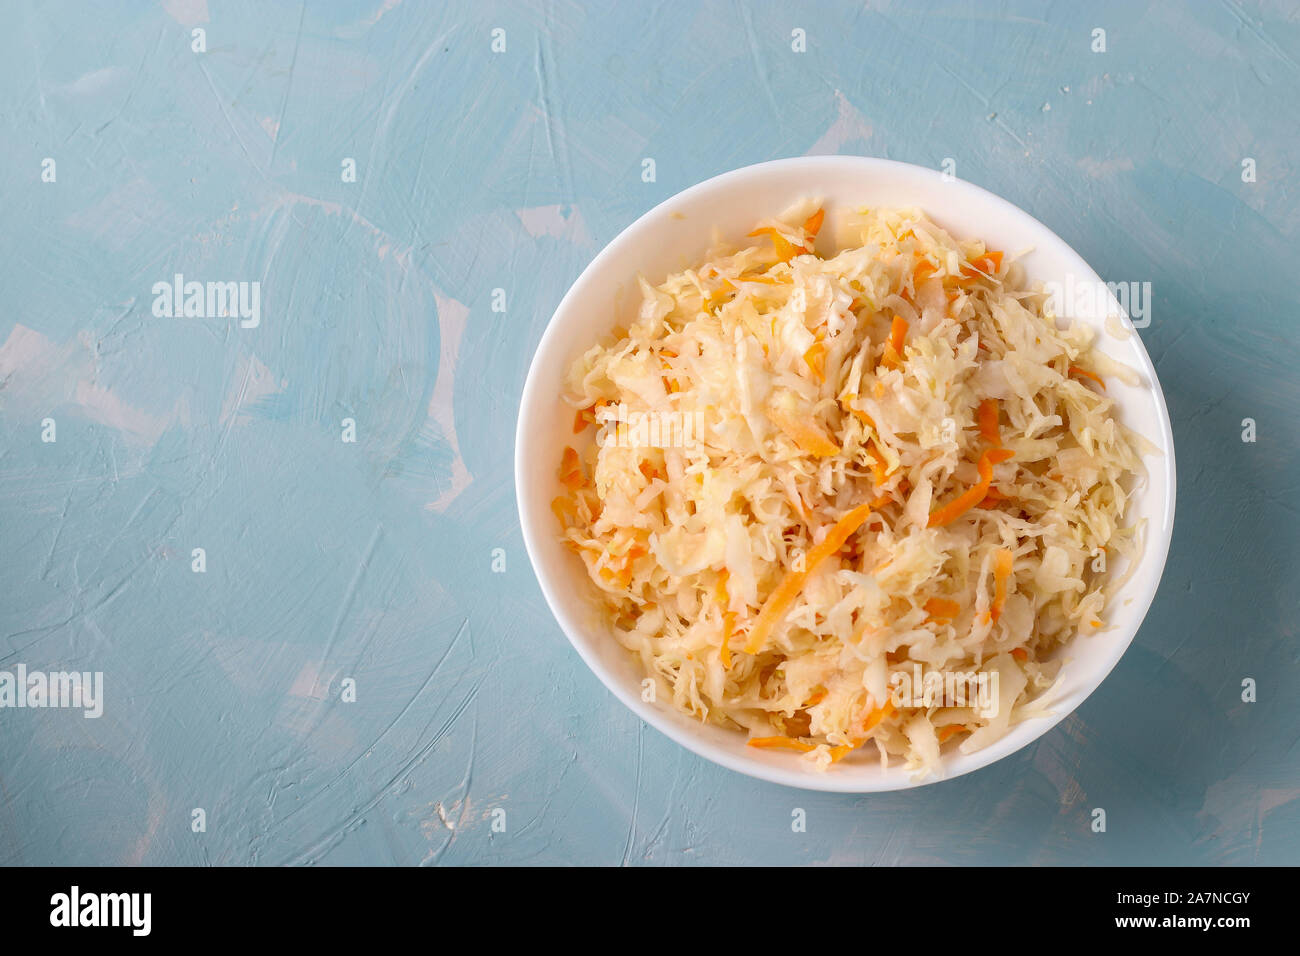 Crauti fatti in casa con le carote in una ciotola su un fondo azzurro, alimento fermentato, vista dall'alto Foto Stock